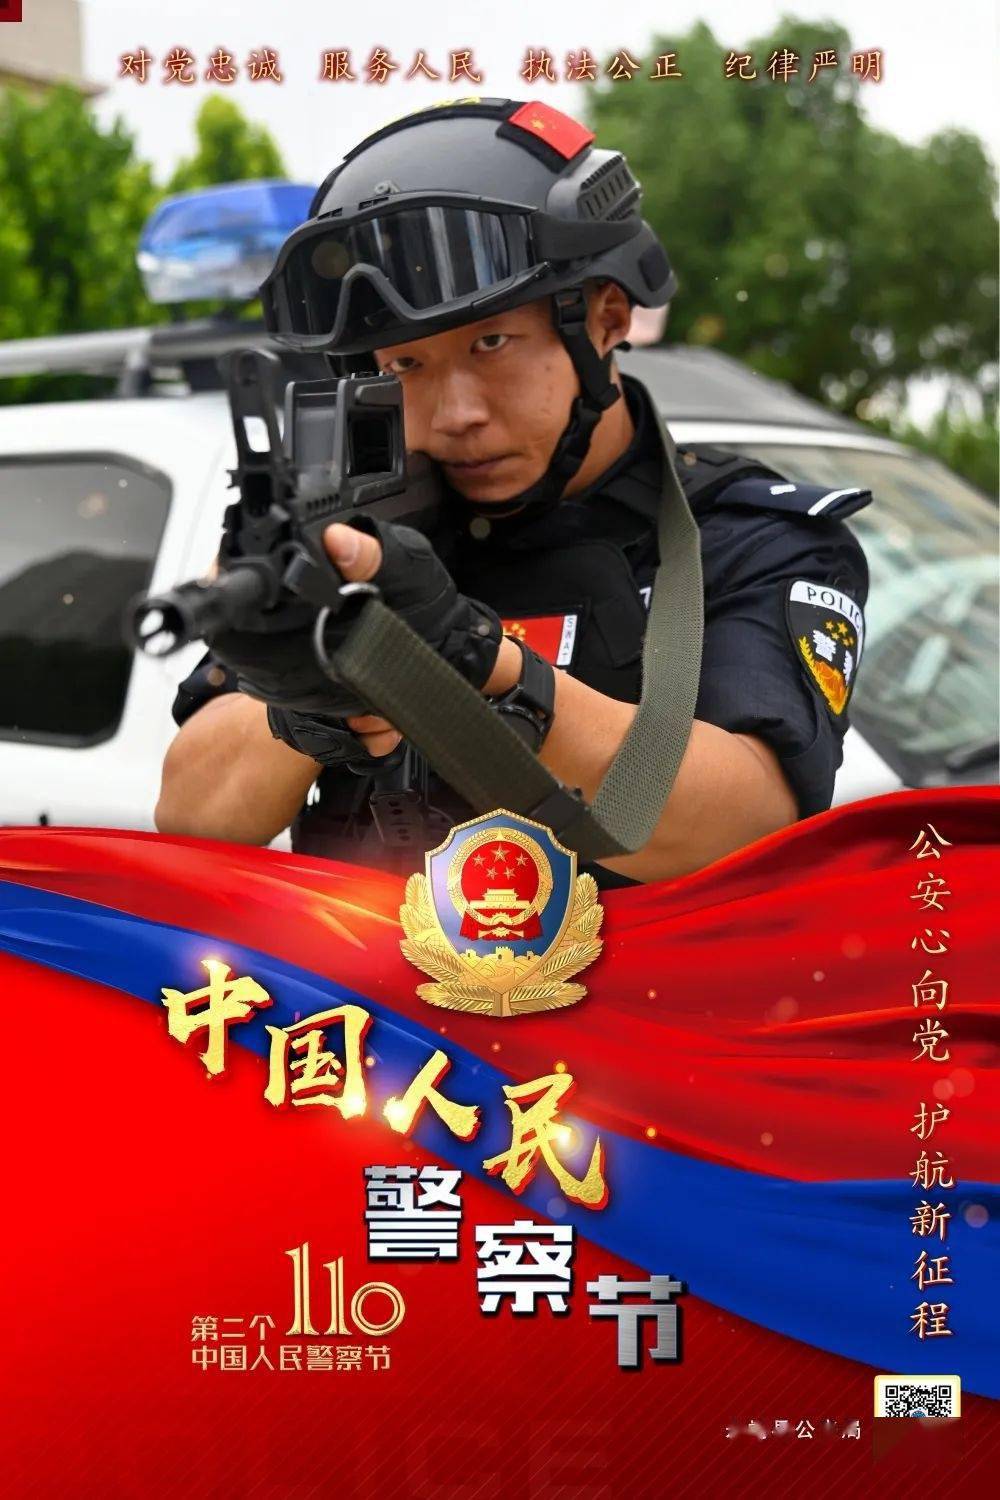 中国警察壁纸手机壁纸图片